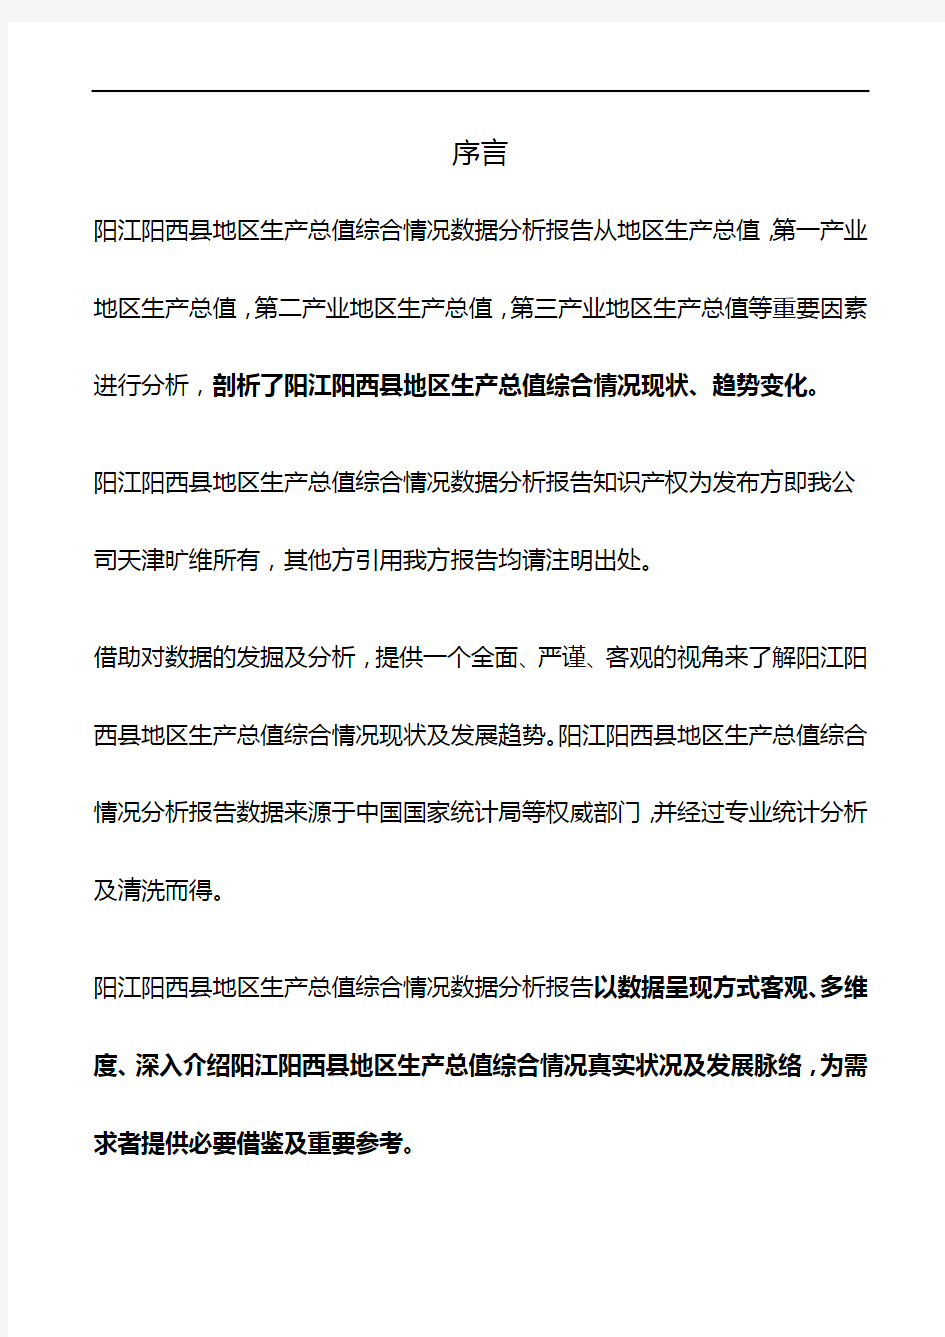 广东省阳江阳西县地区生产总值综合情况数据分析报告2019版